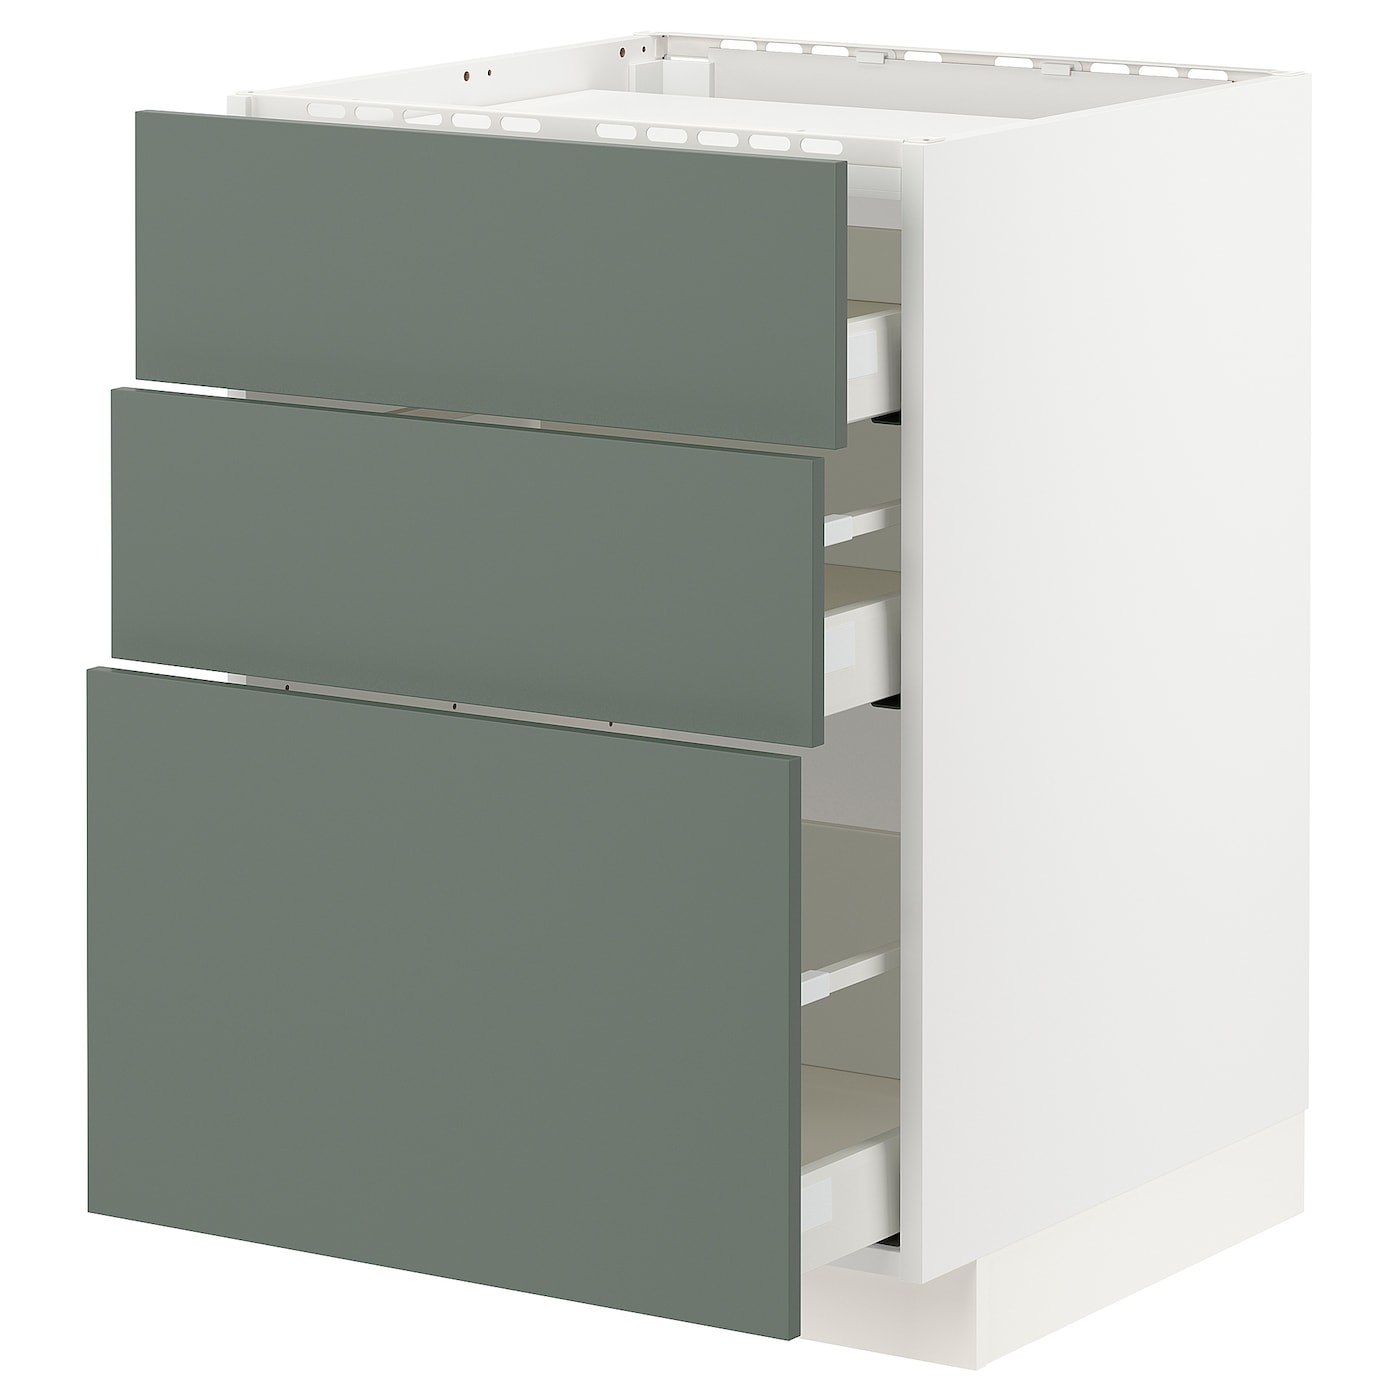 Напольный шкаф с выдвижной столешницей  - IKEA METOD MAXIMERA, 88x61,6x60см, белый/светло-серый, МЕТОД МАКСИМЕРА ИКЕА